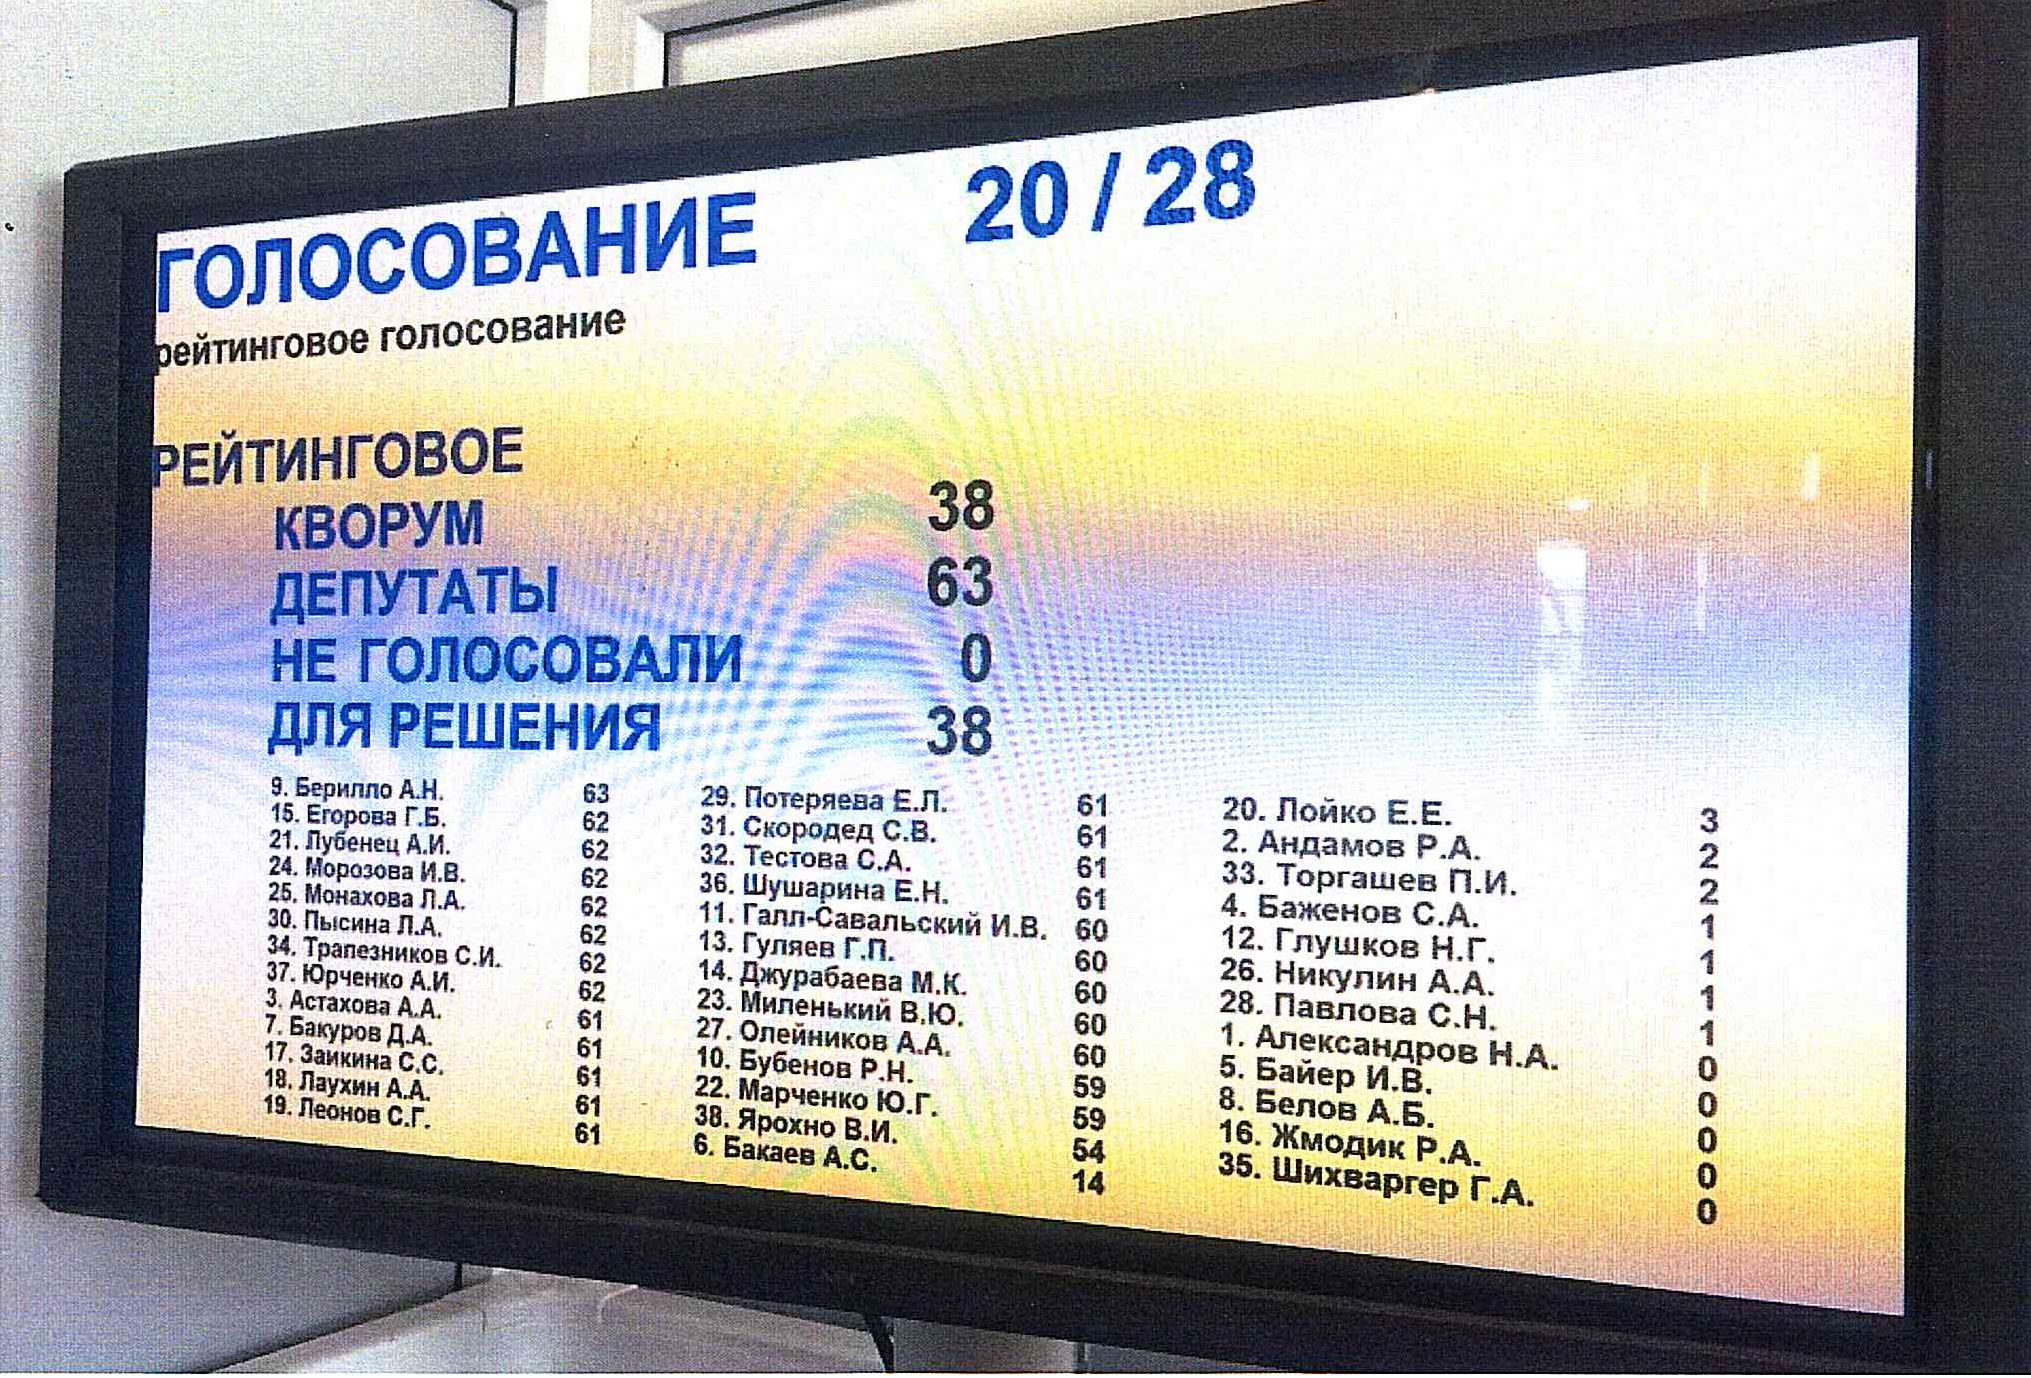 Утвержден список членов Общественной палаты Новосибирской области